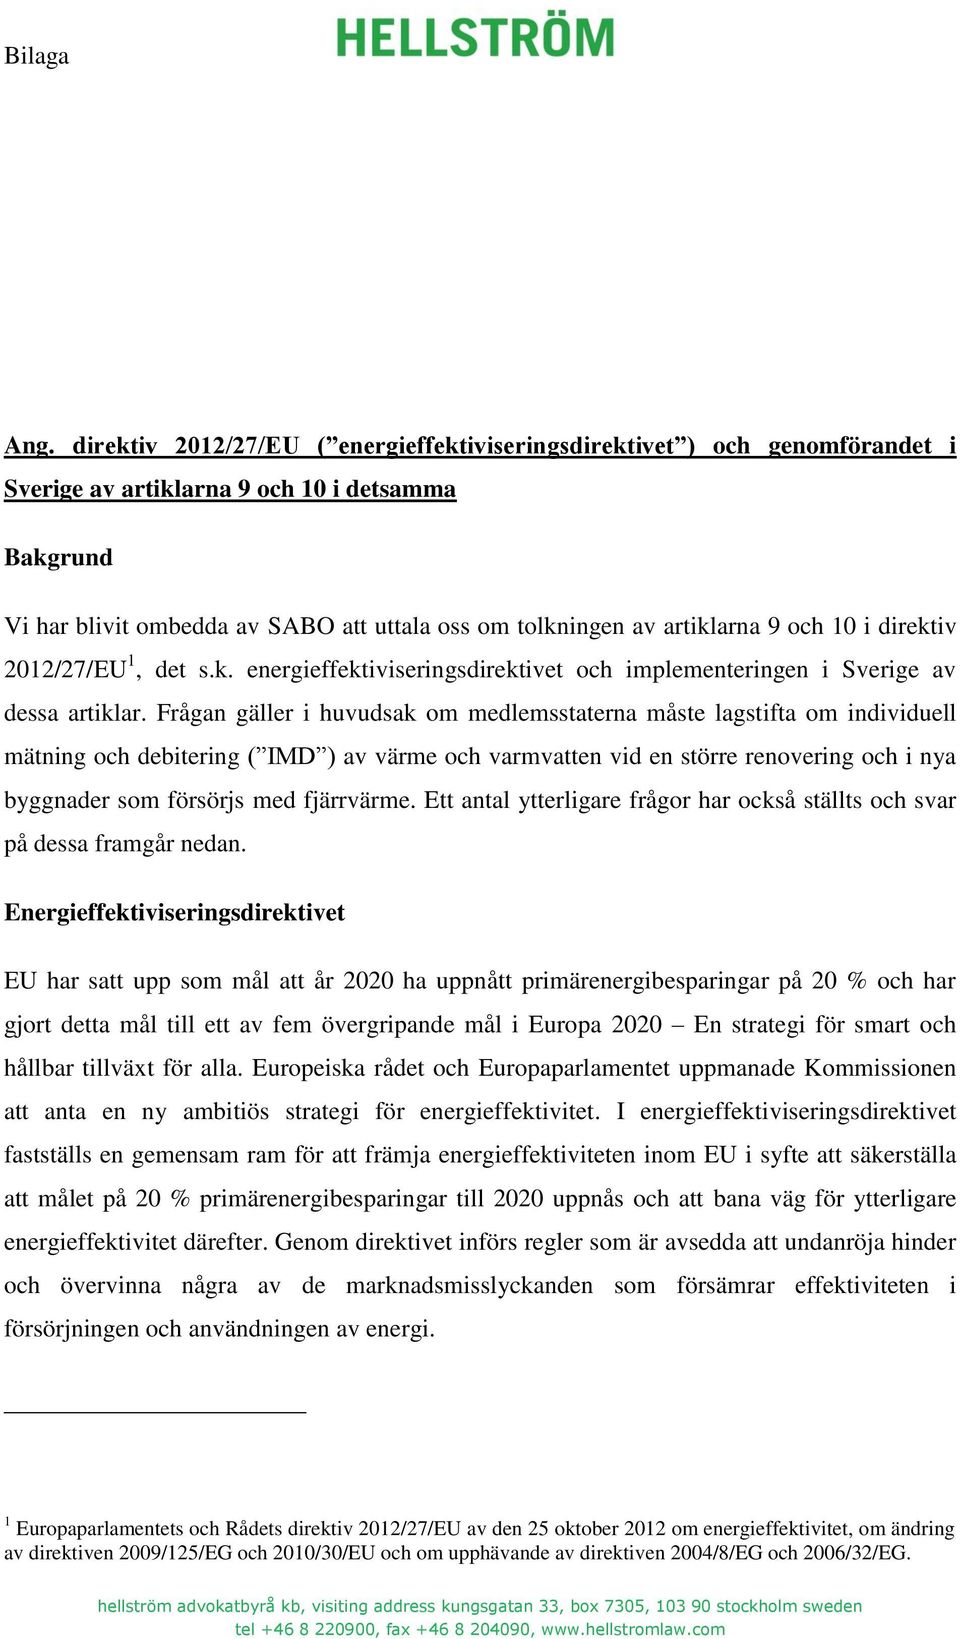 artiklarna 9 och 10 i direktiv 2012/27/EU 1, det s.k. energieffektiviseringsdirektivet och implementeringen i Sverige av dessa artiklar.